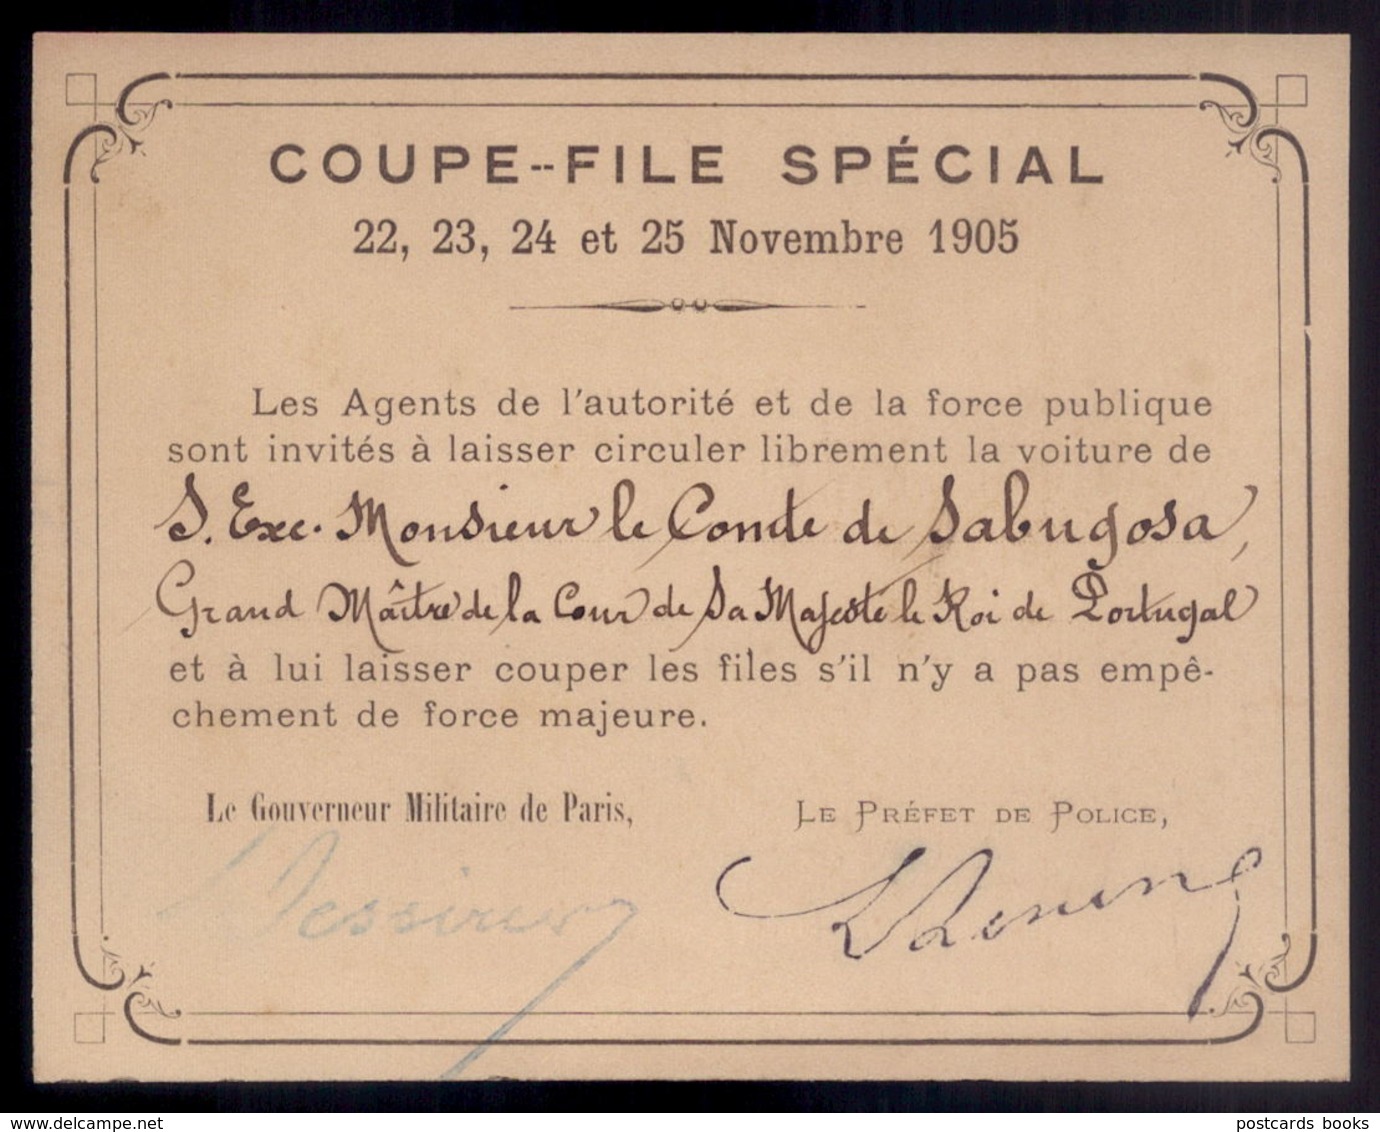 1905 COUPE FILE SPECIAL Pass Visa De Governeur Militaire De Paris Et Prefet De Police, Pour CONDE De SABUGOSA PORTUGAL - Programmes